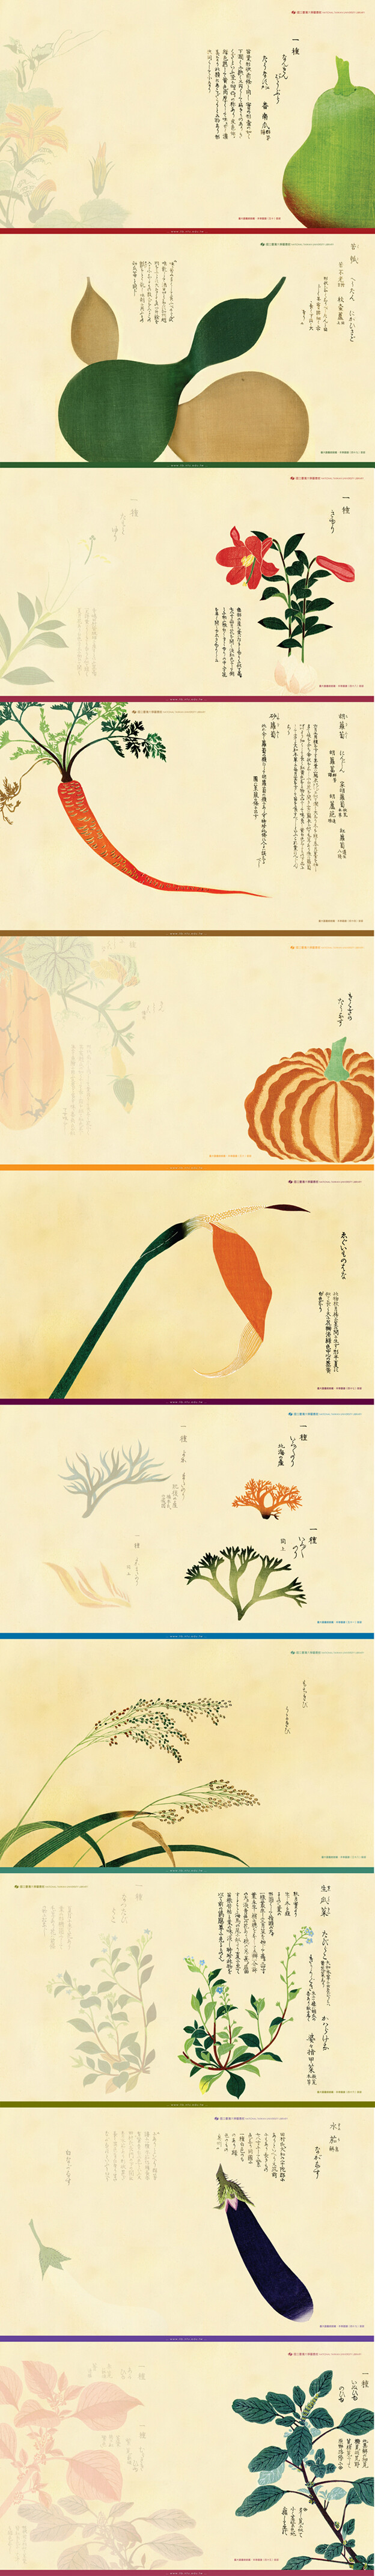 国立台湾大学图书馆发布的12年桌布 12年选取的是日本画家岩崎常正画的 本草图谱 堆糖 美图壁纸兴趣社区